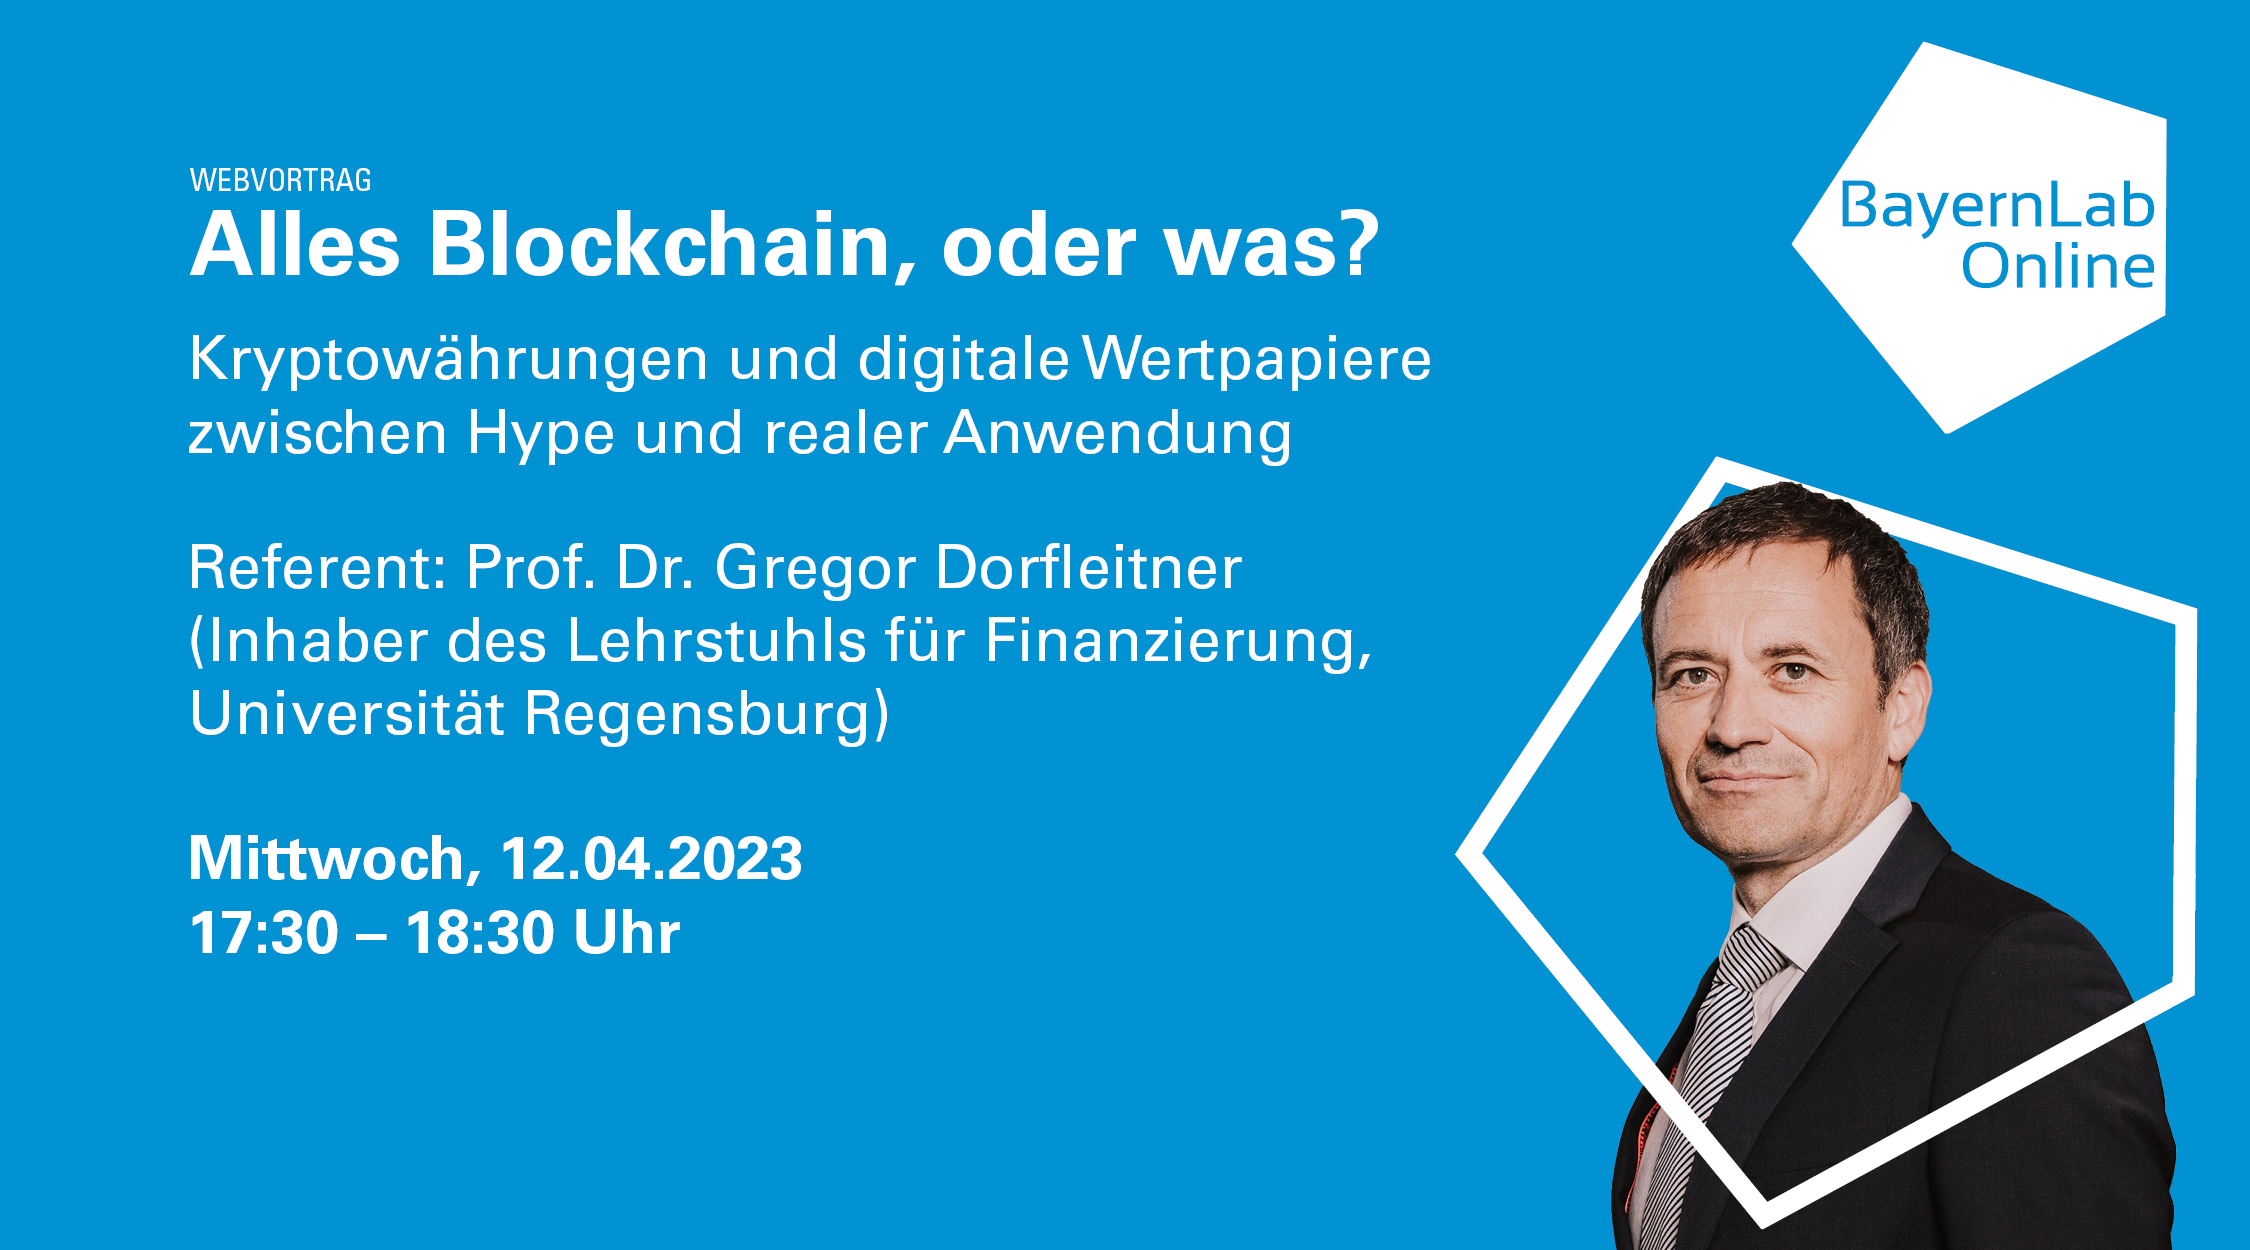 Vortrag Alles Blockchain oder was? von dem Referenten Herrn Prof. Dr. Gregor Dorfleitner am Mittwoch den 12.04.2023 bei BayernLab Online